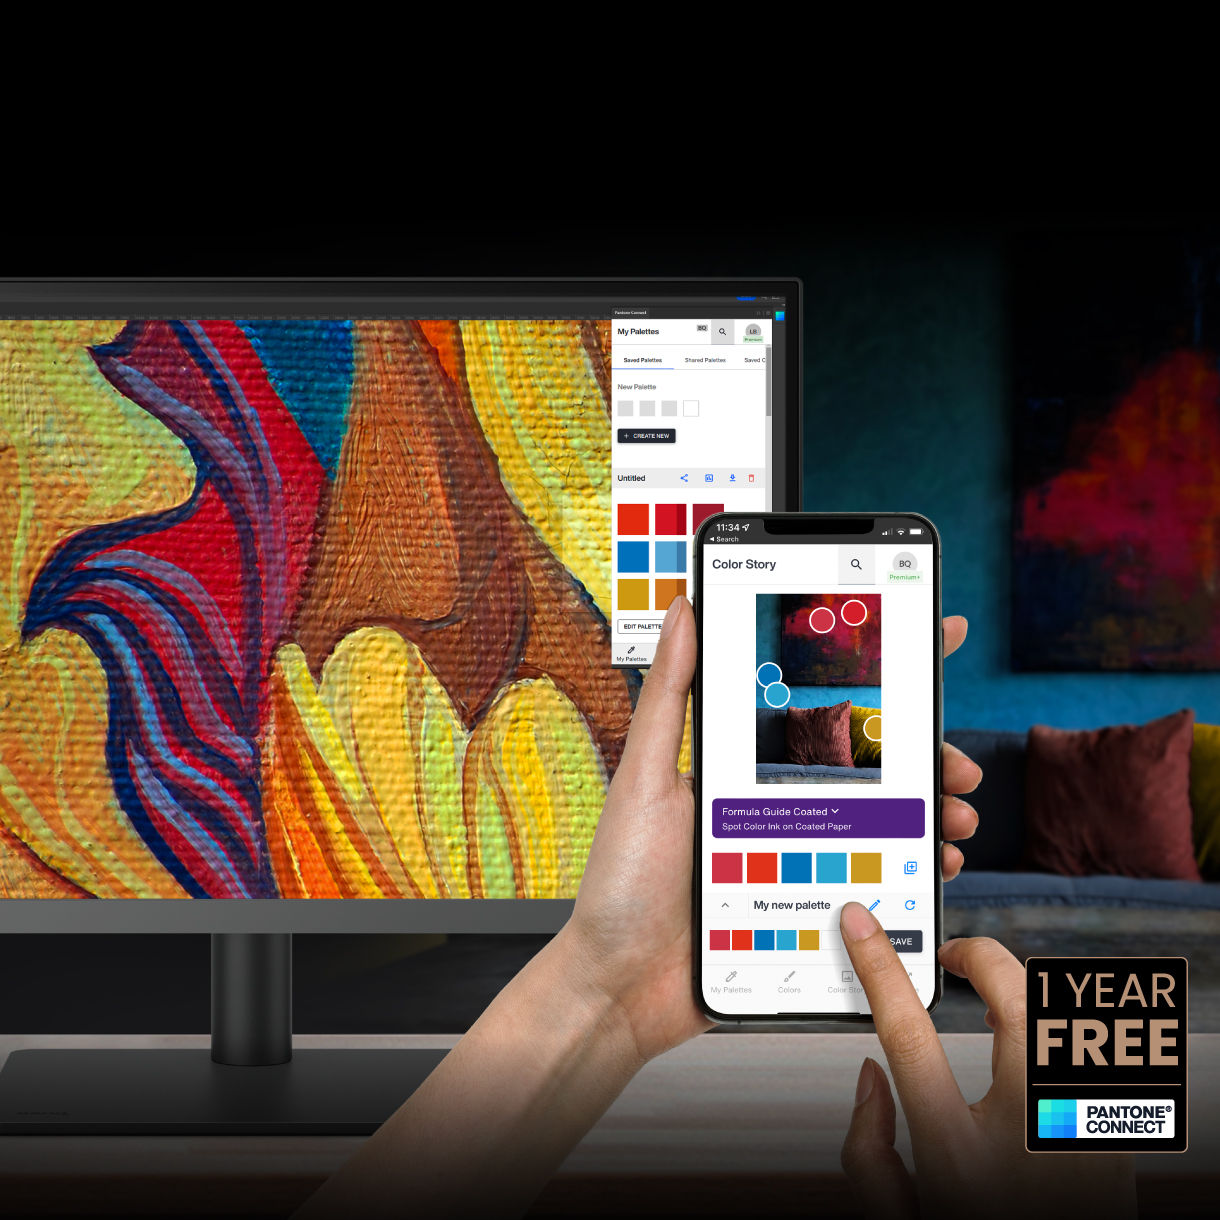 In qualità di proprietario o di nuovo acquirente di un monitor professionale BenQ, riceverai Pantone Connect Premium a titolo gratuito per un anno per mantenere l’uniformità e la fedeltà dei colori tra i supporti digitali.